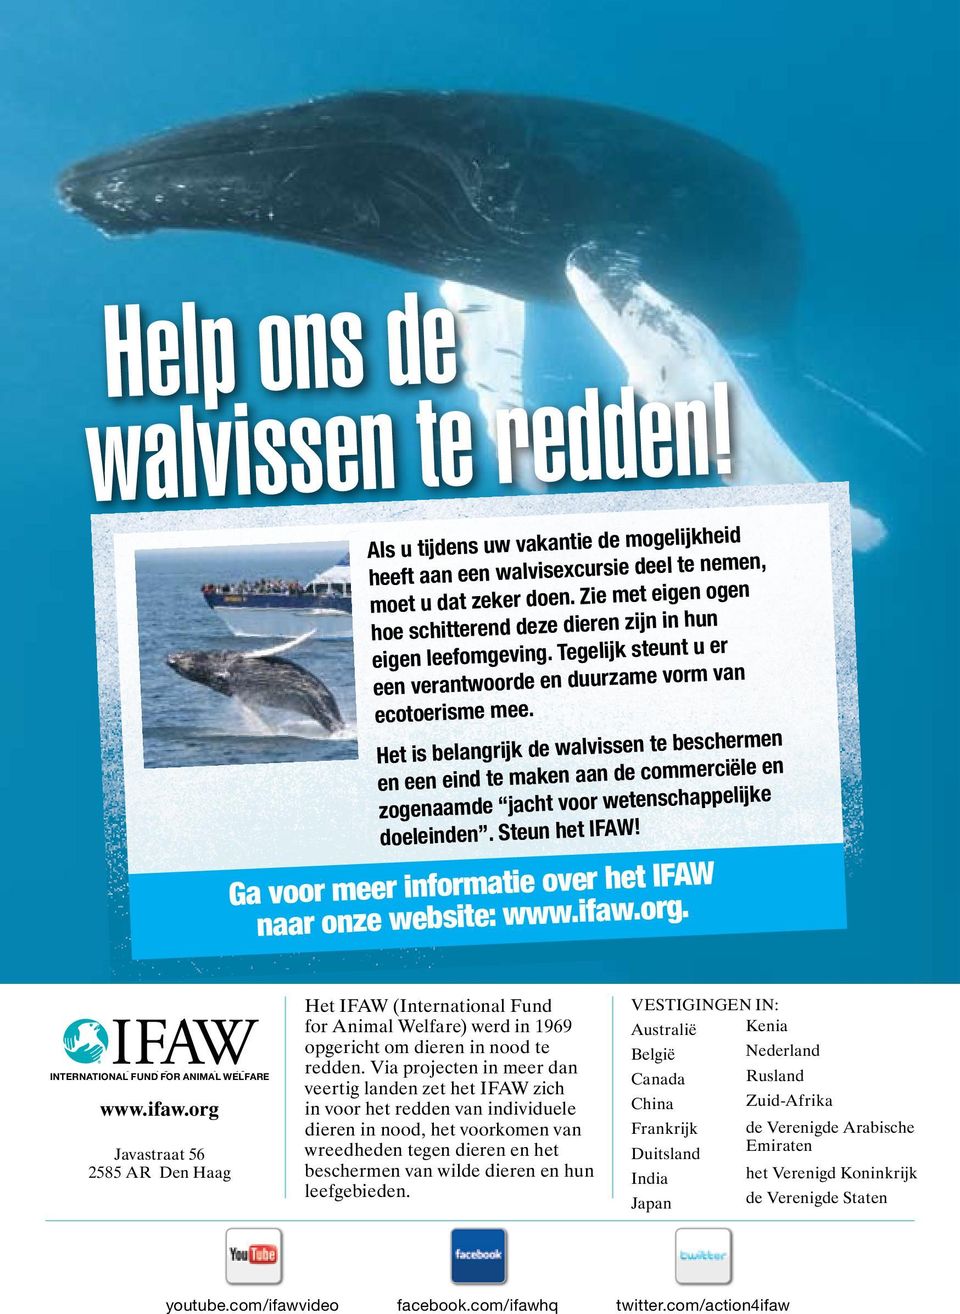 Het is belangrijk de walvissen te beschermen en een eind te maken aan de commerciële en zogenaamde jacht voor wetenschappelijke doeleinden. Steun het IFAW!